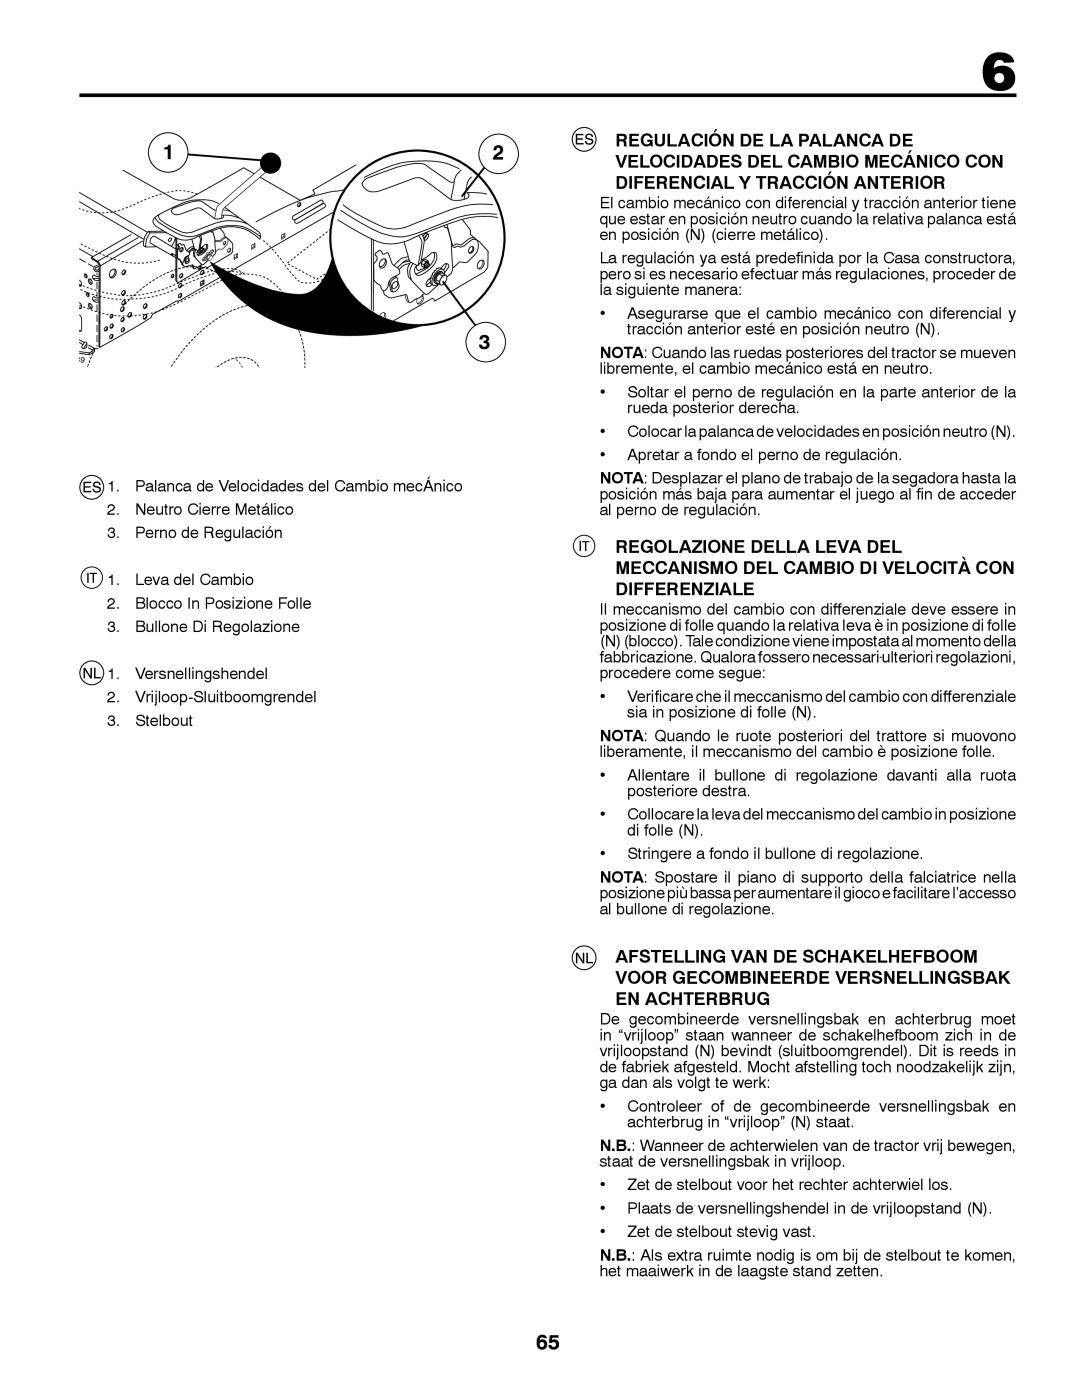 Husqvarna LT126 Regulación De La Palanca De Velocidades Del Cambio Mecánico Con Diferencial Y Tracción Anterior 